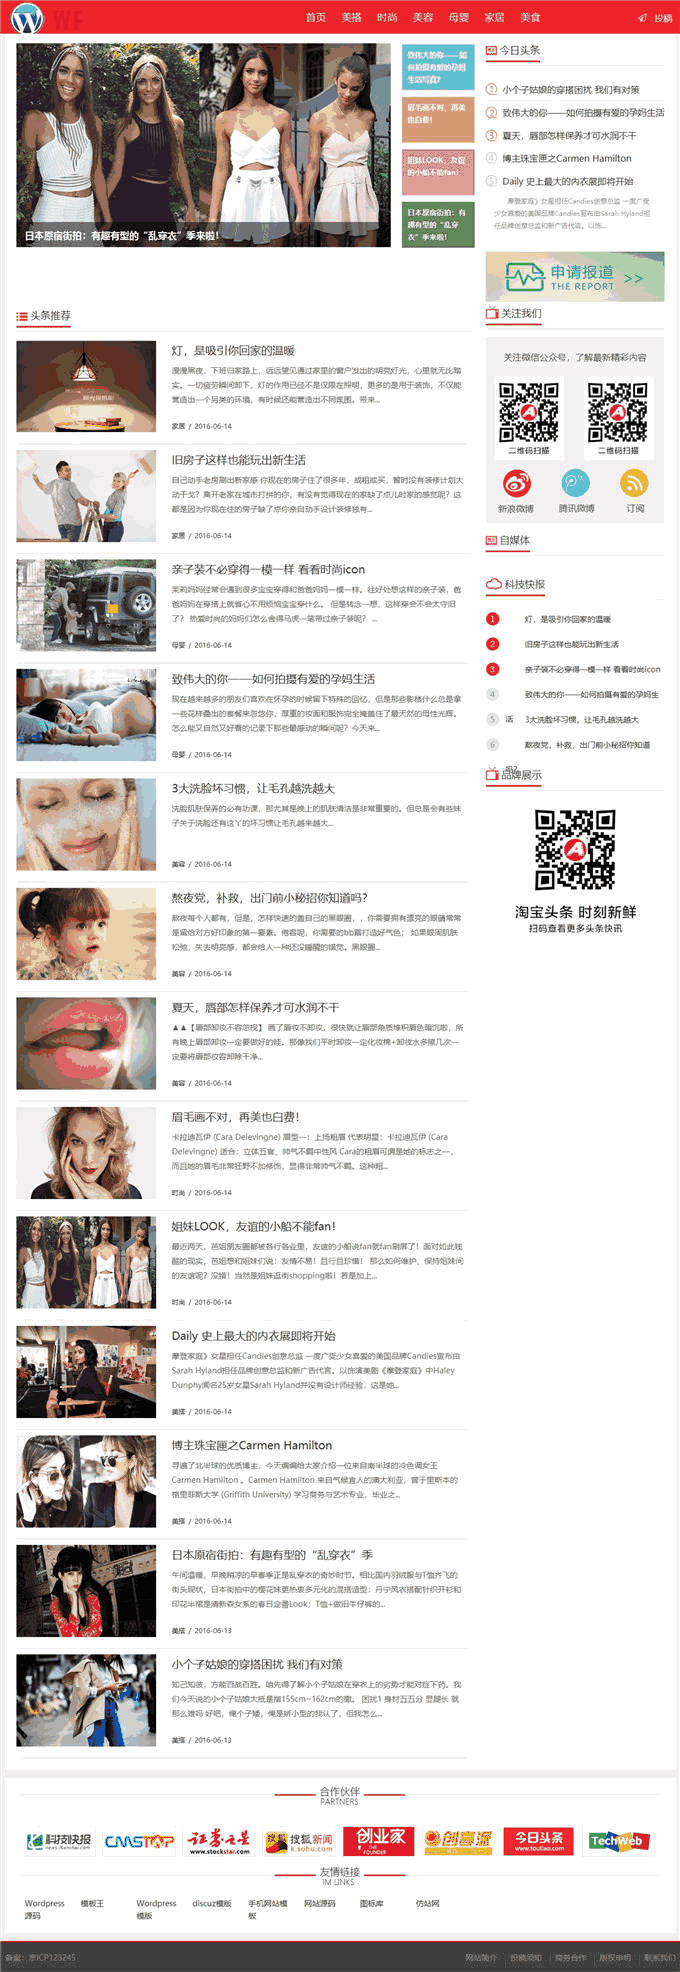 时尚美容家居美食资讯门户网站WordPress模板含手机站演示图